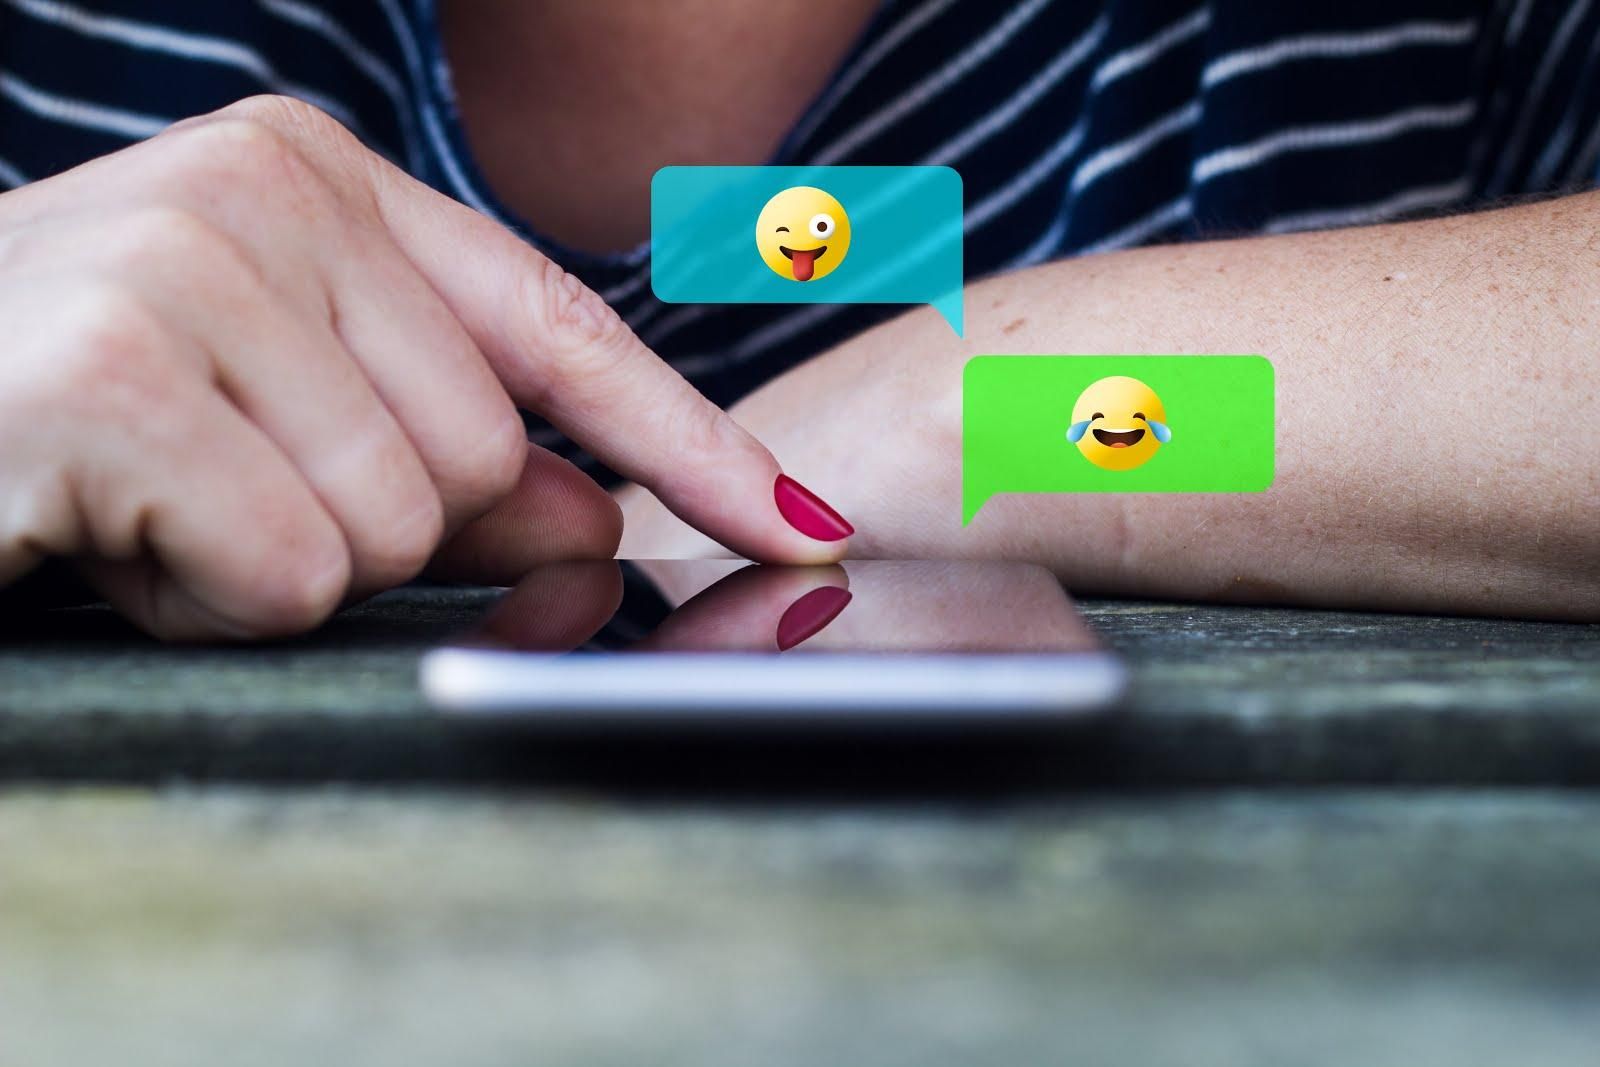 Смайлики в СМС-сообщениях влияют на отношения и сексуальную жизнь: исследования